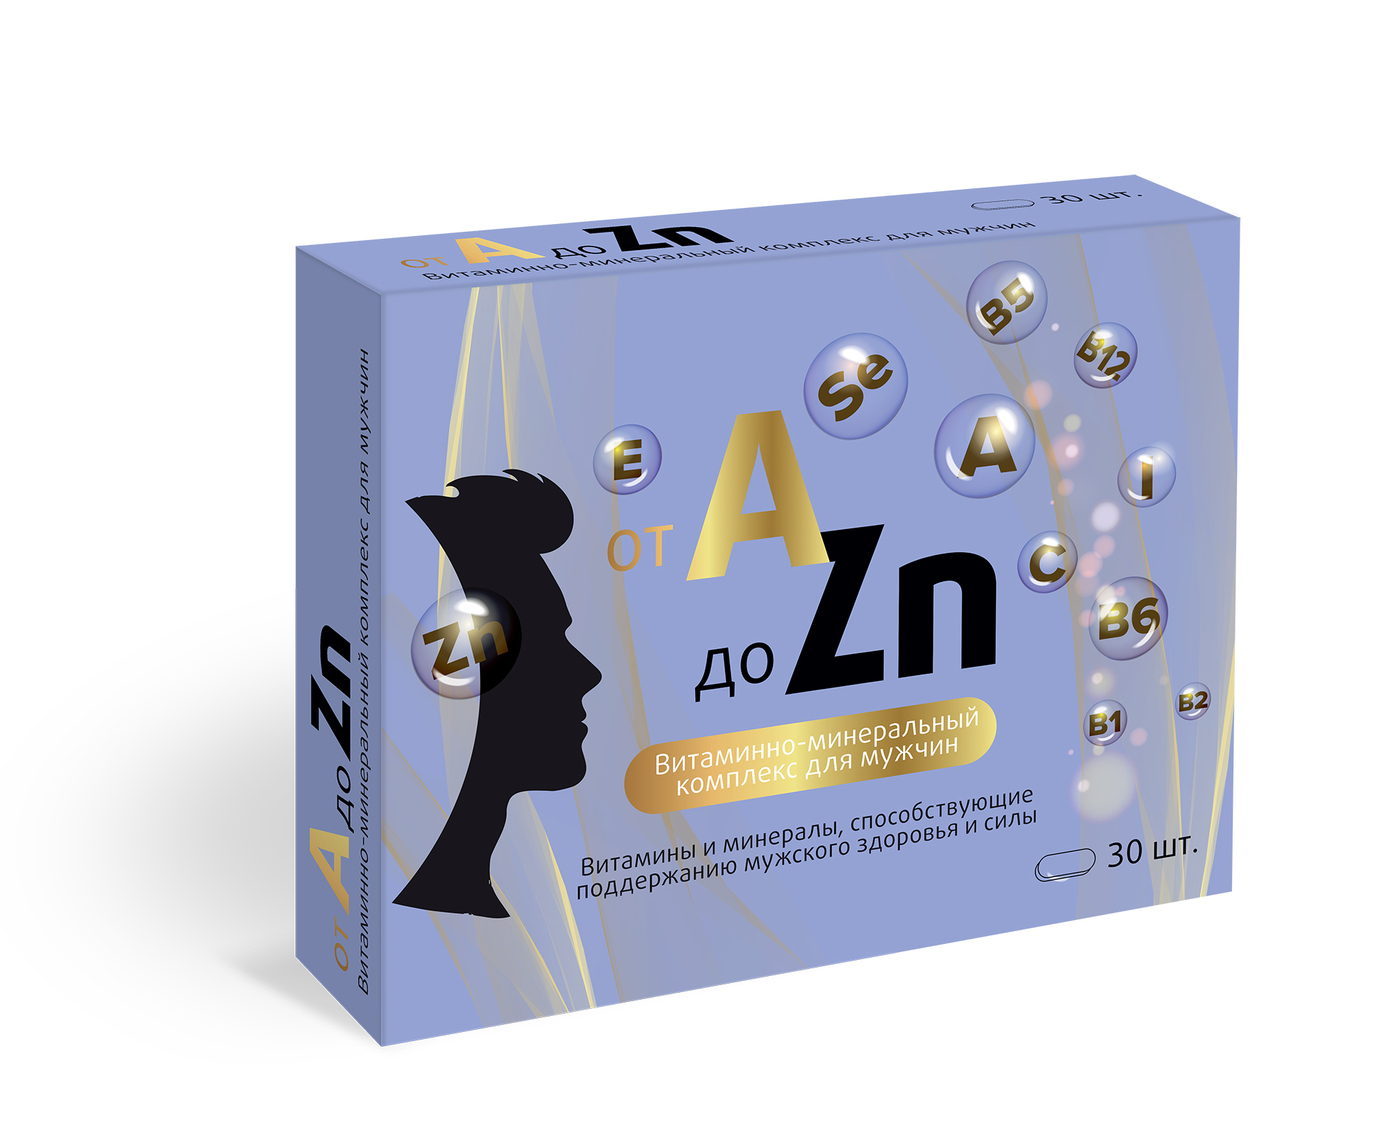 Витаминный комплекс a zn таблетки для мужчин. Витаминный комплекс a-ZN квадрат-с табл. Для женщин №30. Витаминный комплекс для мужчин a -ZN 30таб. Витаминный комплекс a-ZN для мужчин витамир. Витаминный комплекс a-ZN для мужчин n30 квадрат.